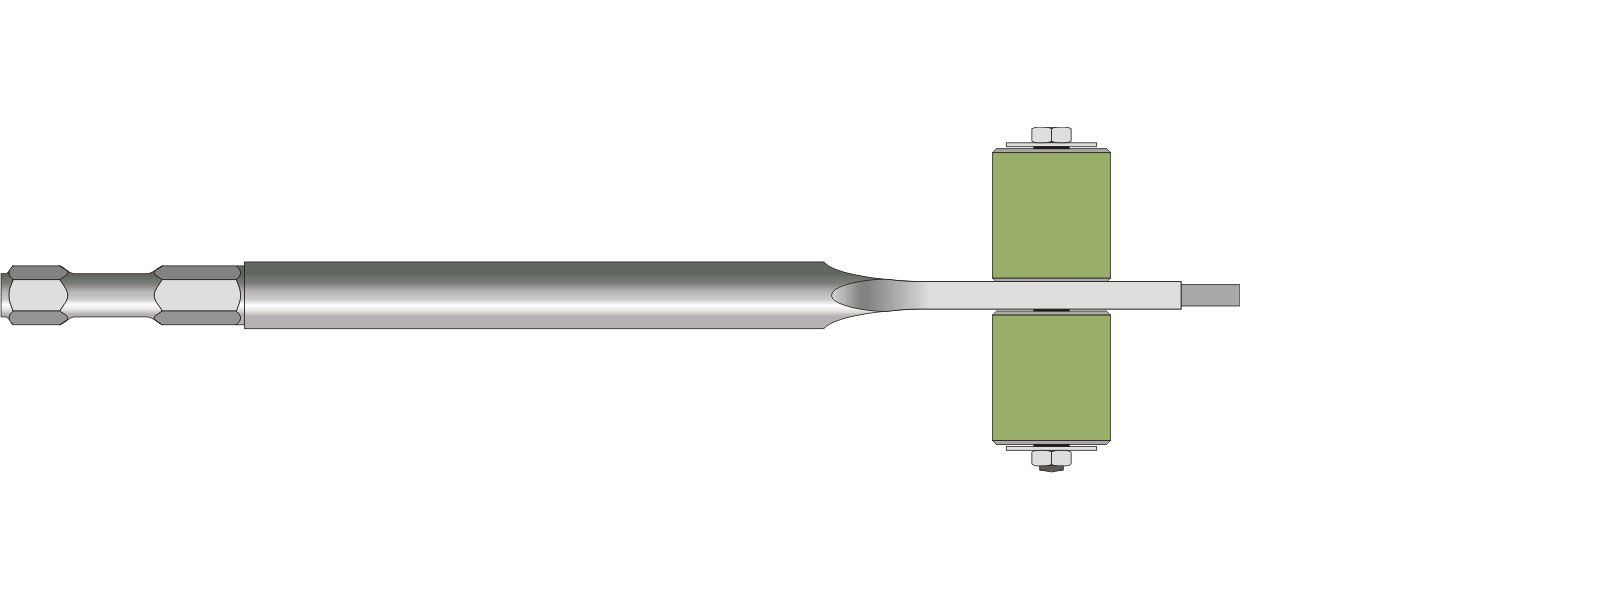 VOGT Blechmeißel auf Rollen M 650 R l = 300 mm - 14mm Meißelaufnahme